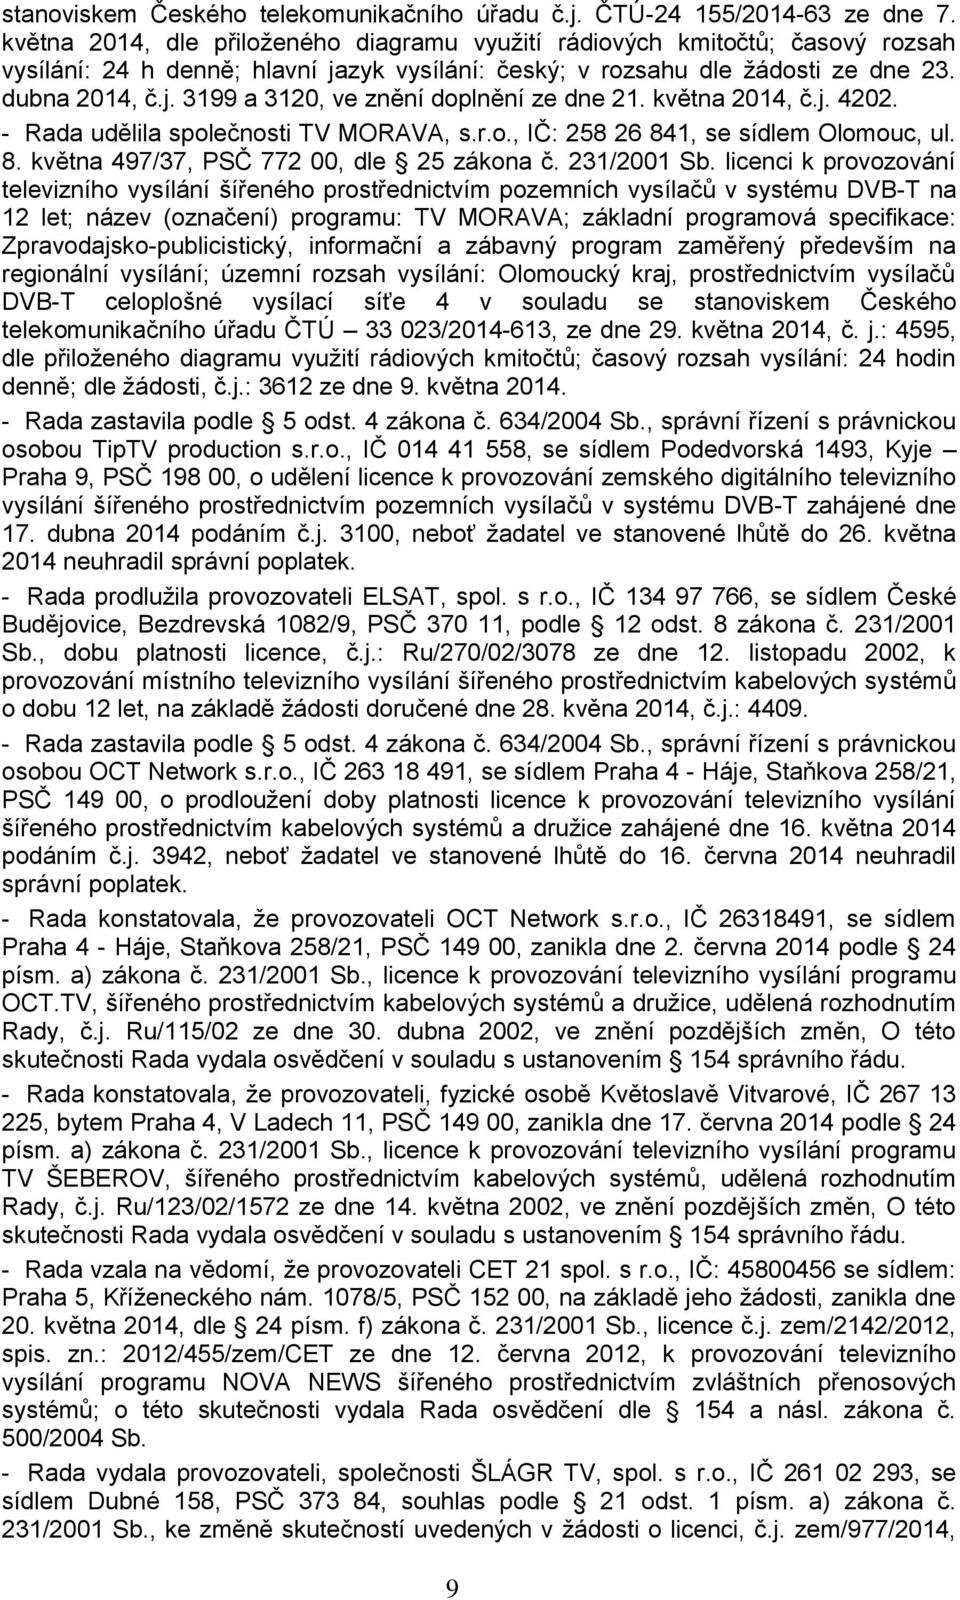 května 2014, č.j. 4202. - Rada udělila společnosti TV MORAVA, s.r.o., IČ: 258 26 841, se sídlem Olomouc, ul. 8. května 497/37, PSČ 772 00, dle 25 zákona č. 231/2001 Sb.